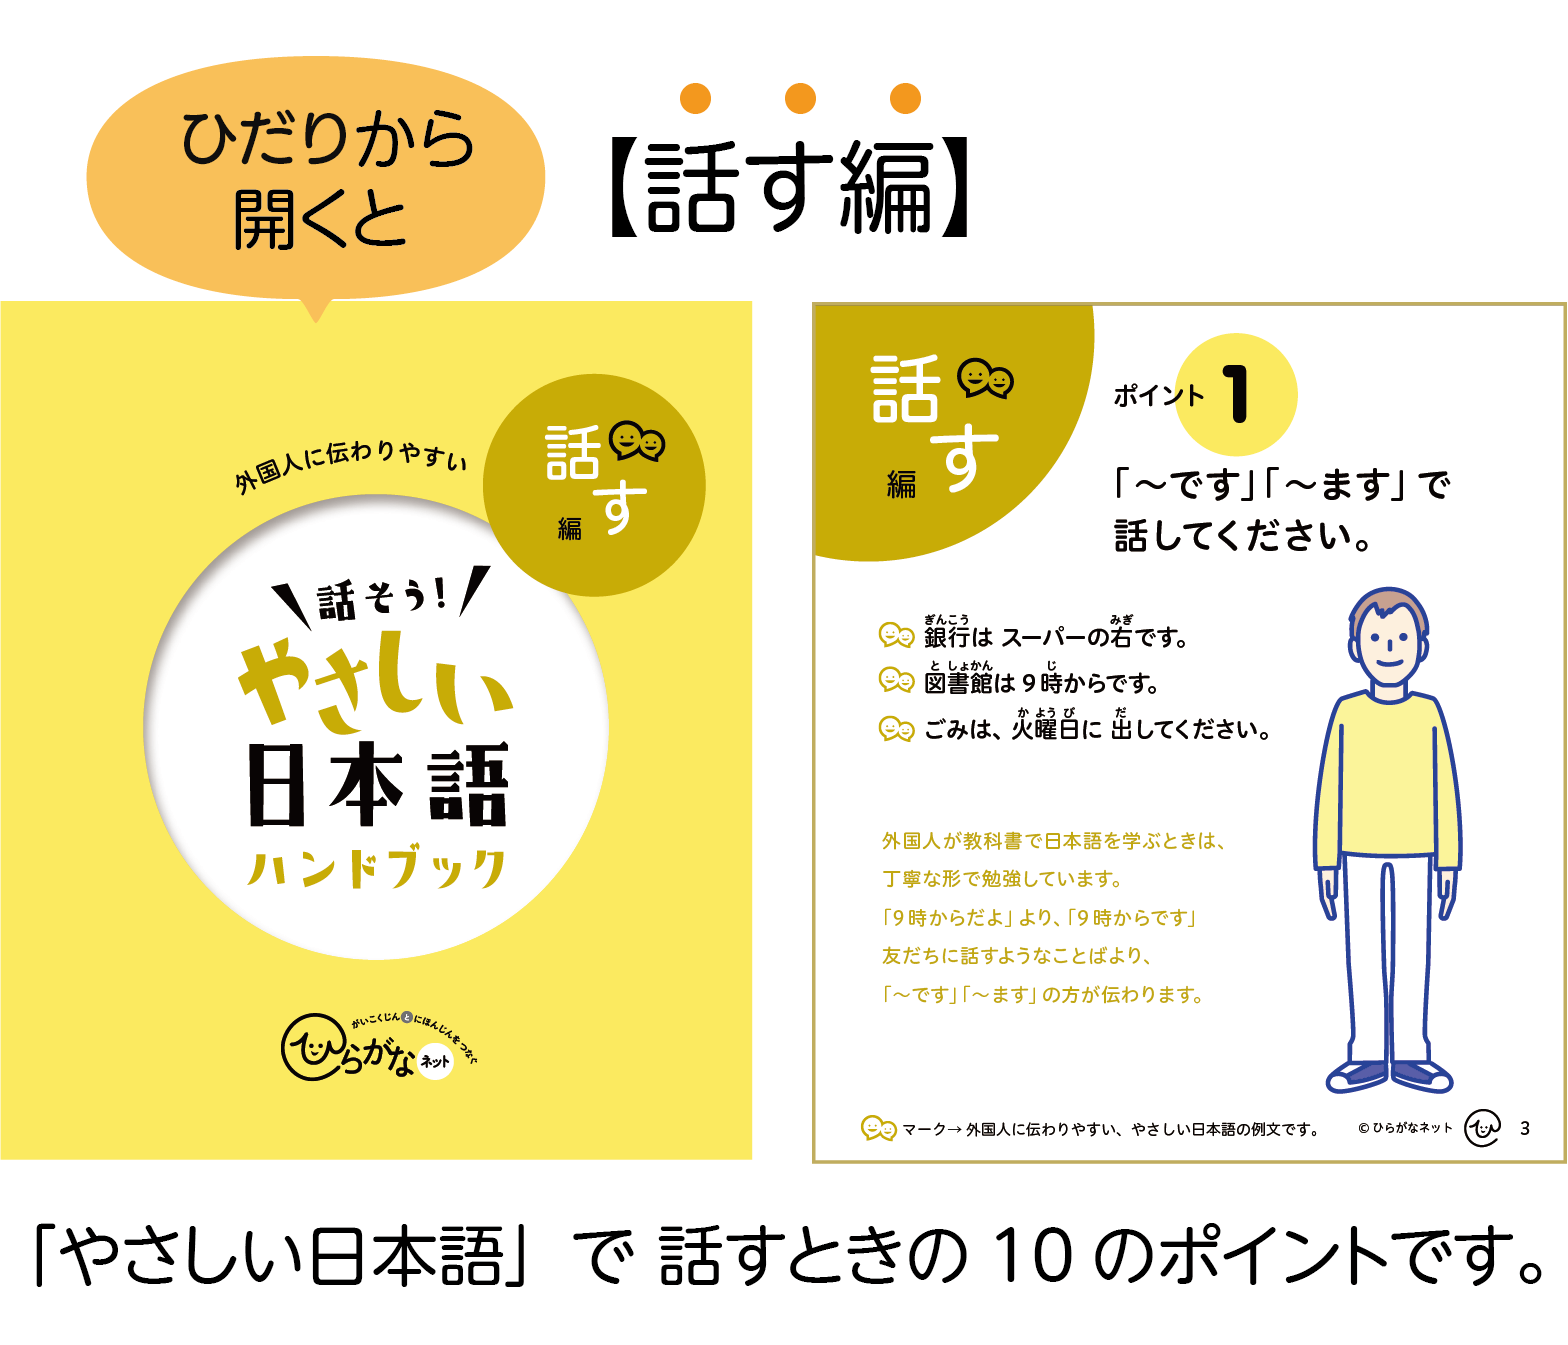 やさしい日本語ハンドブックを左から開くと話す編「やさしい日本語」で話すときの10のポイントです。